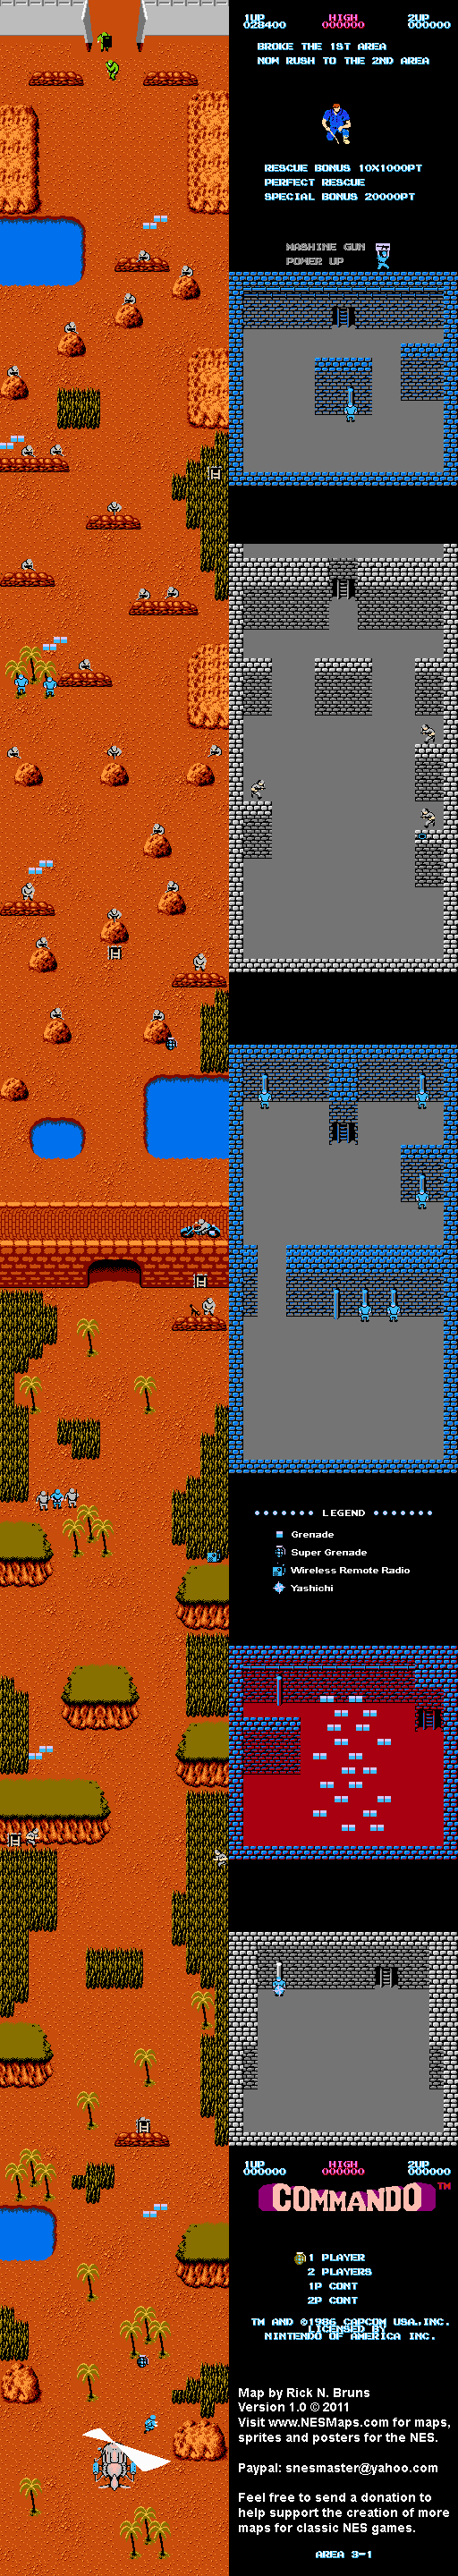 Commando - Area 3-1 - Nintendo NES Map